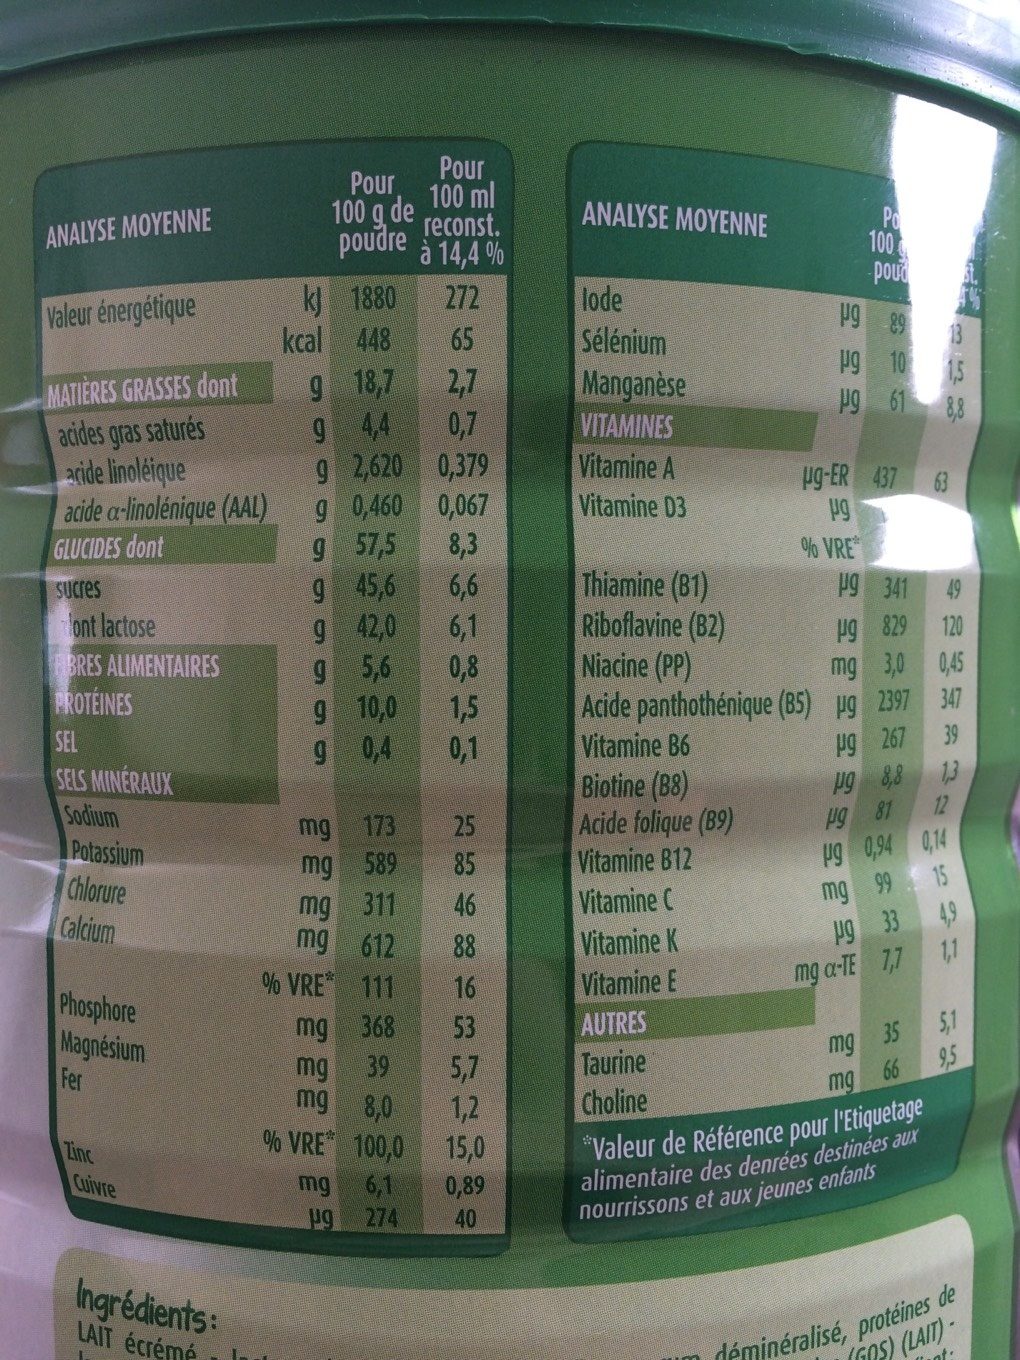 BLEDILAIT Croissance + Maxi Format 1,6kg De 1 à 3 ans - Nutrition facts - fr